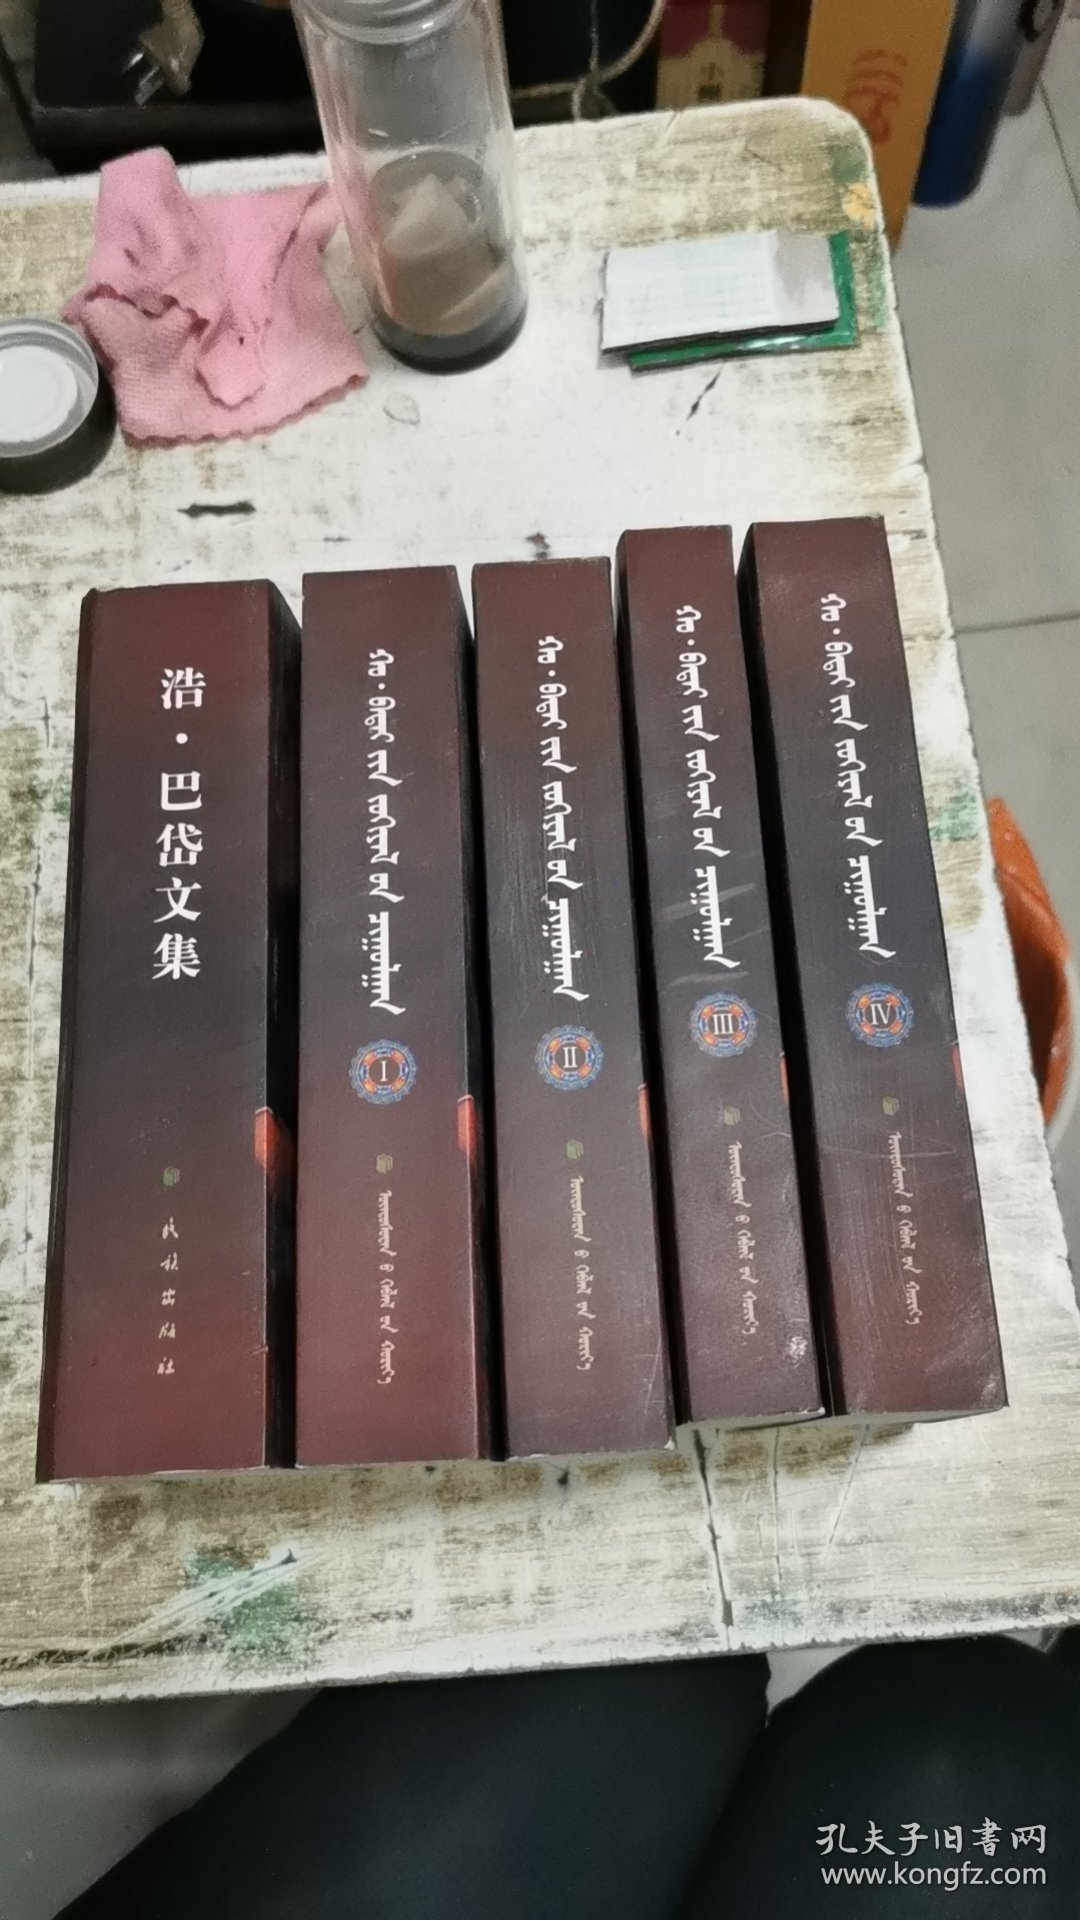 浩·巴岱文集 : 蒙古文、汉文（全五册带原盒装）书架8